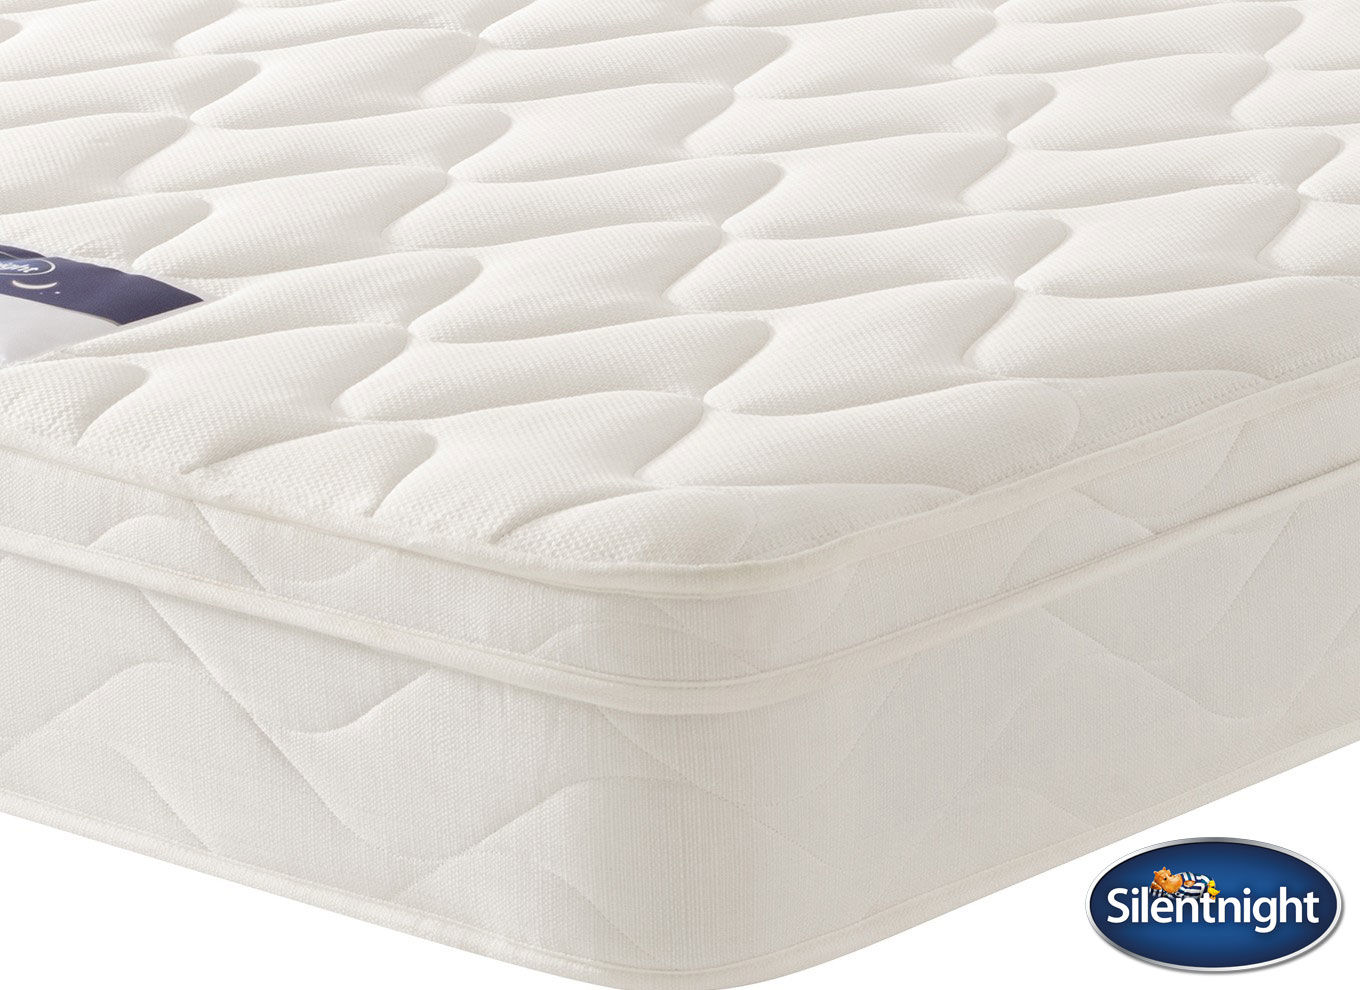 silentnight ambassador miracoil mattress review